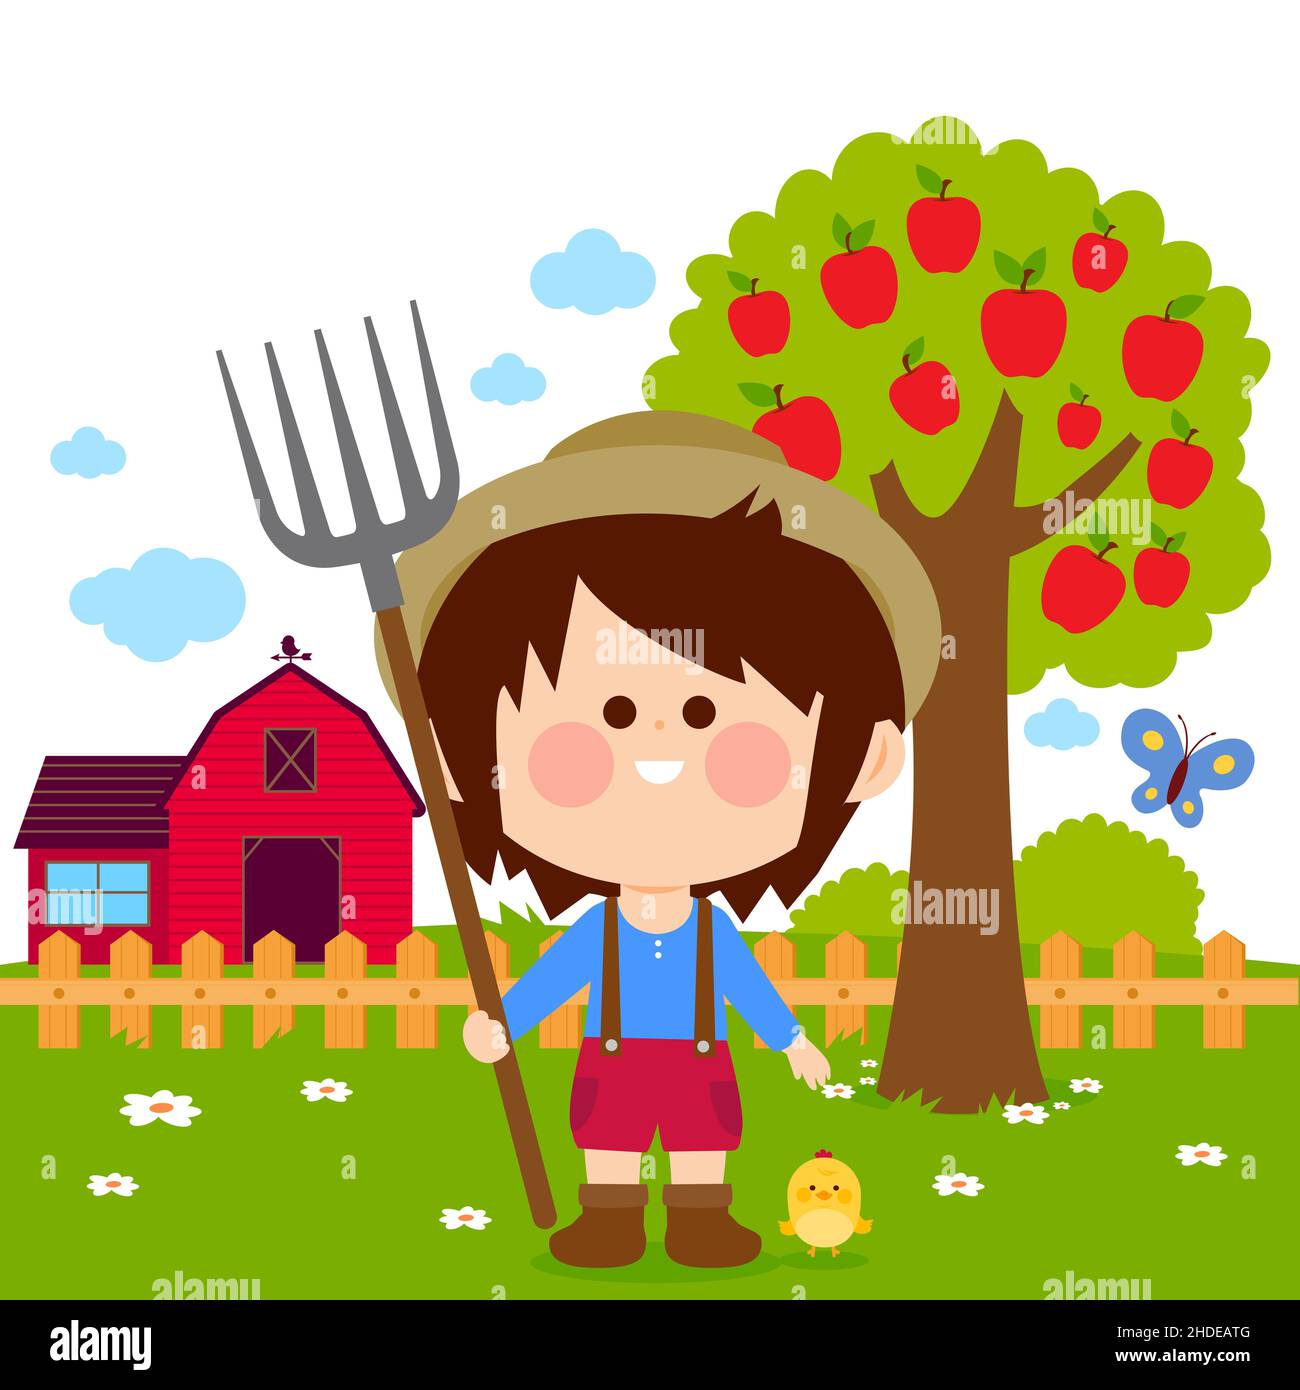 Little farmer boy at the farm with barn, farmhouse, fence and apple tree. Stock Photo